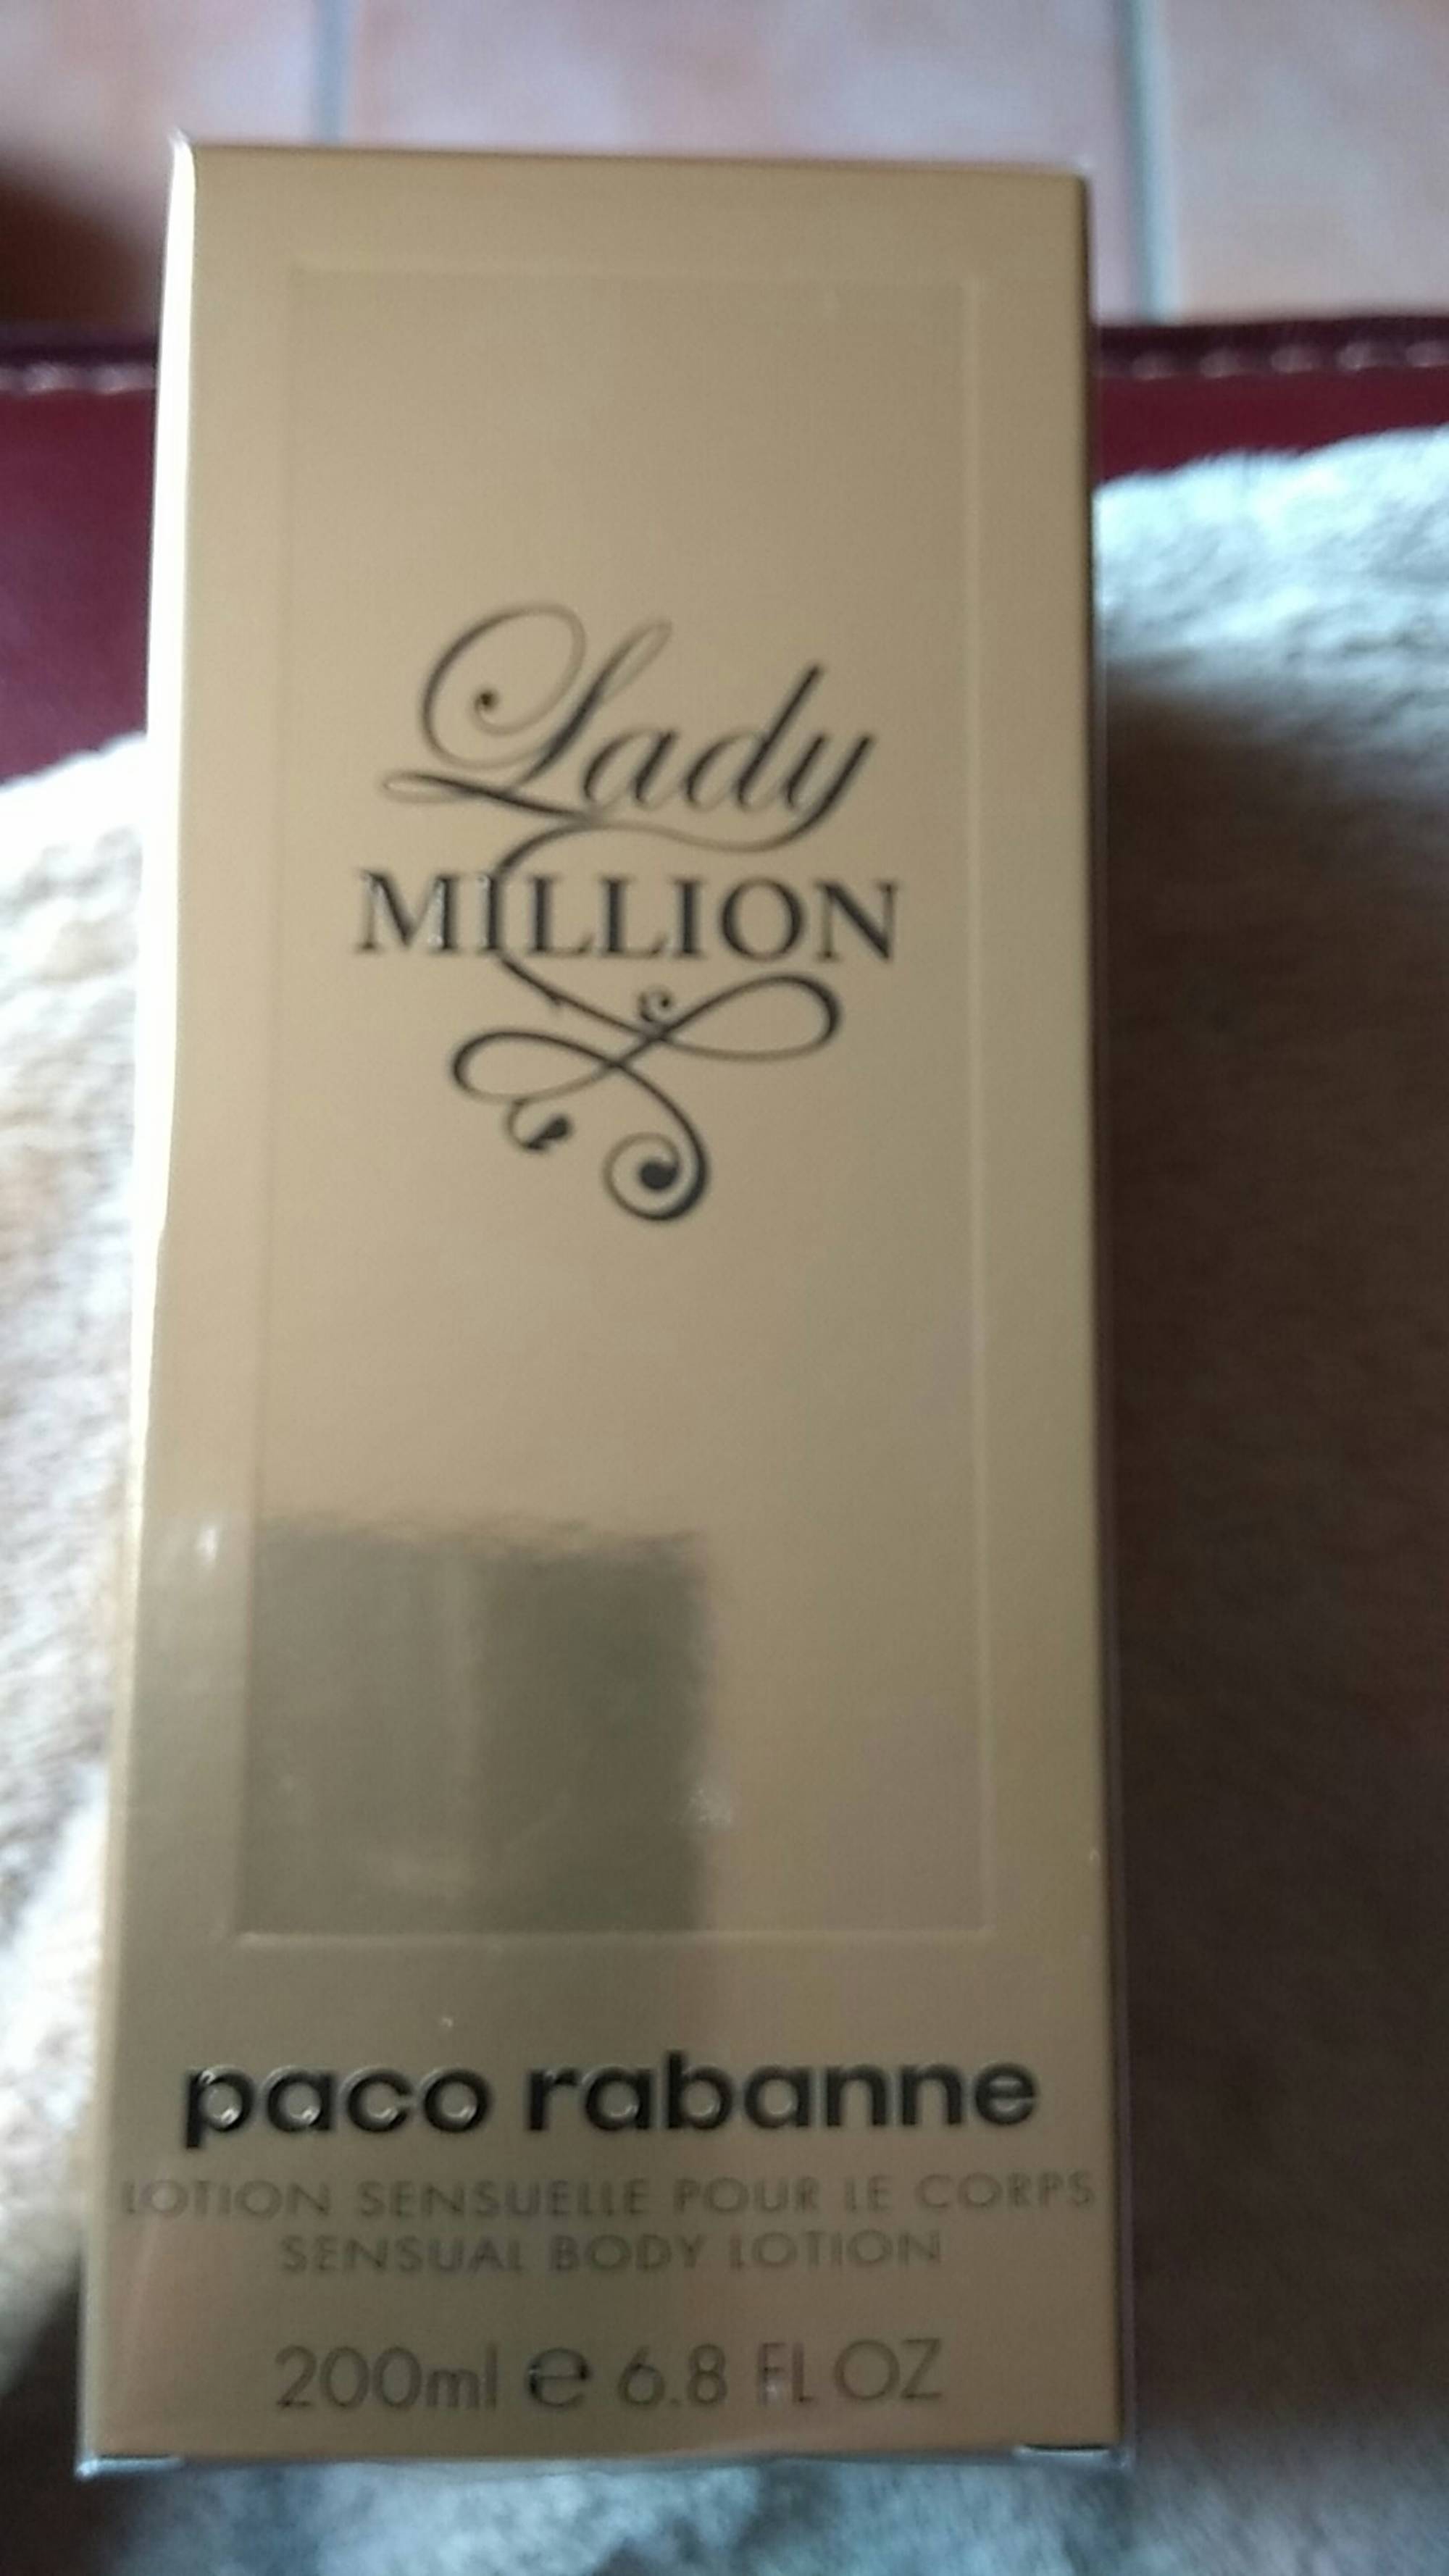 PACO RABANNE - Lady million - Lotion sensuelle pour le corps 